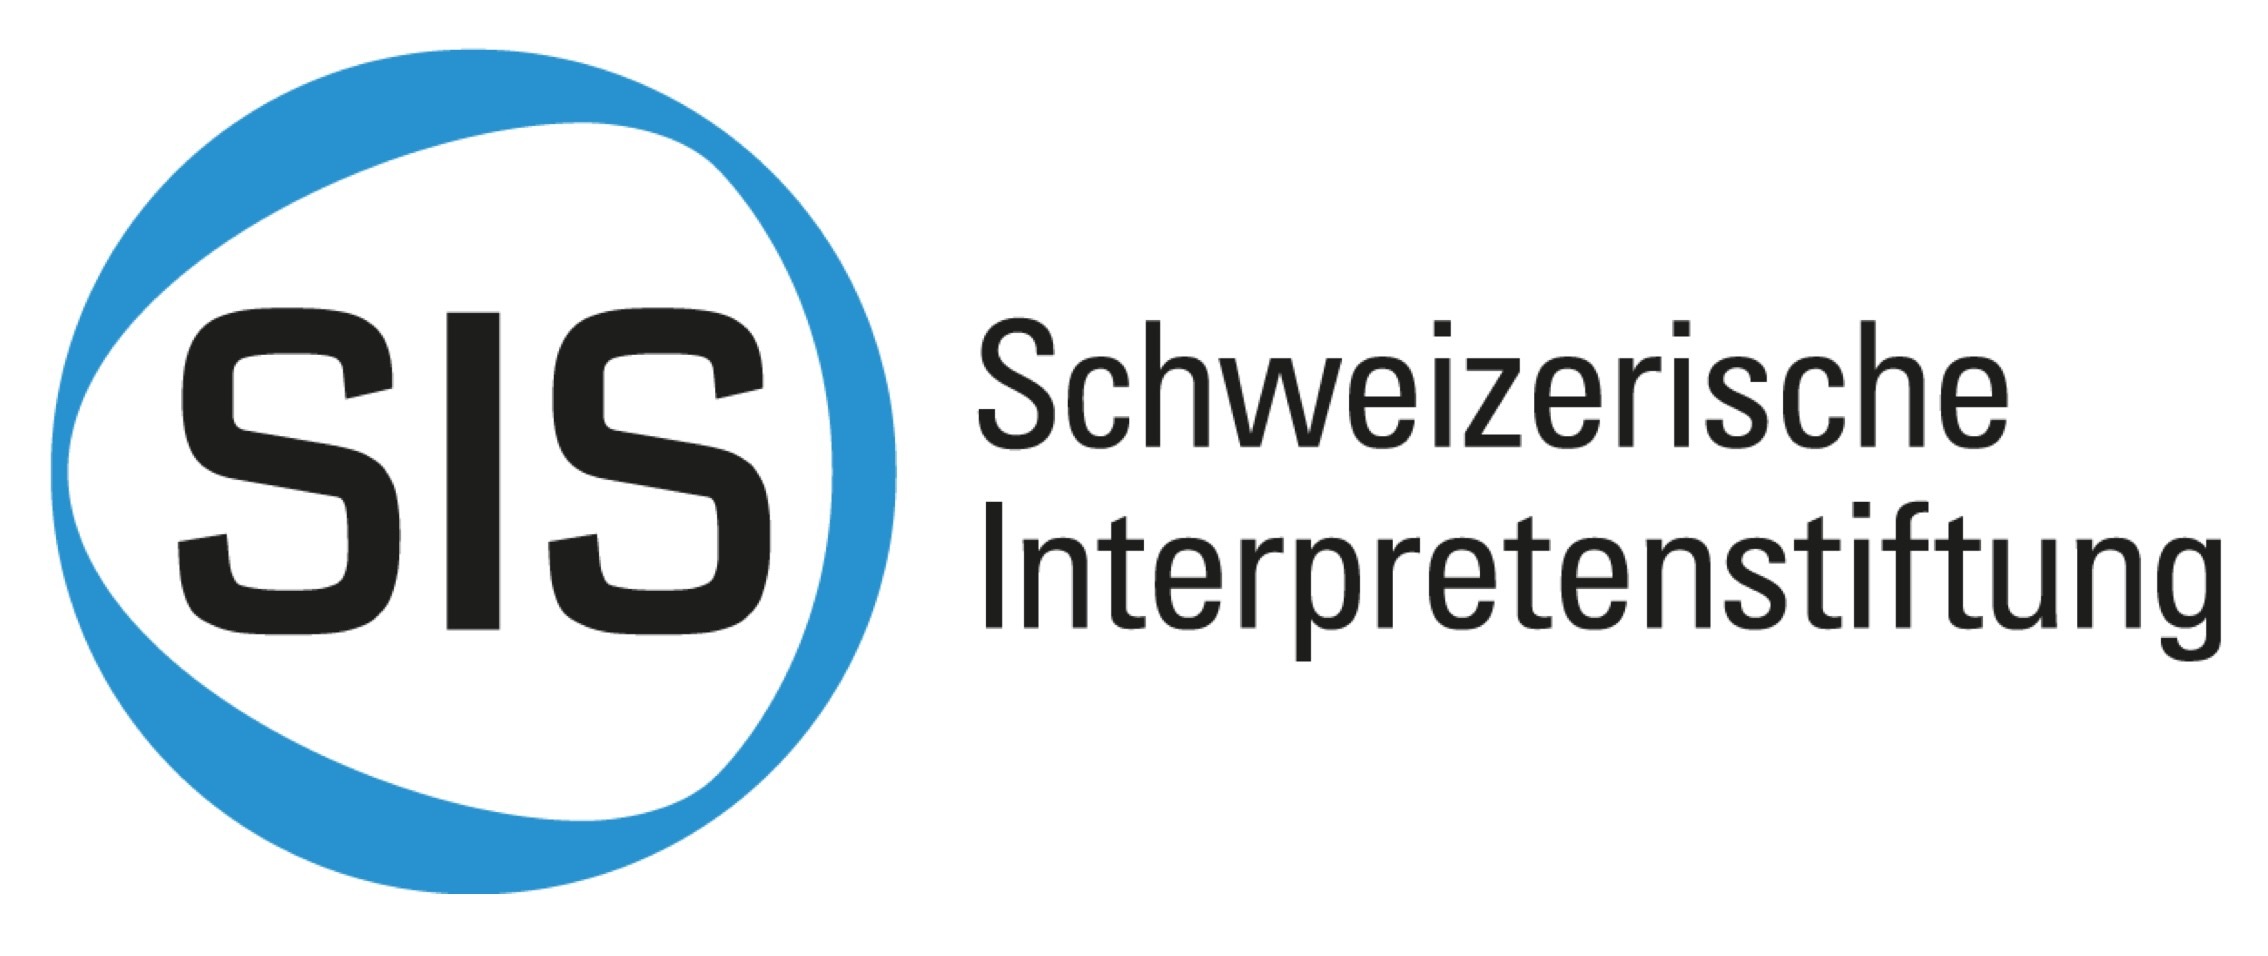 SIS - Schweizerische Interpreten Stiftung